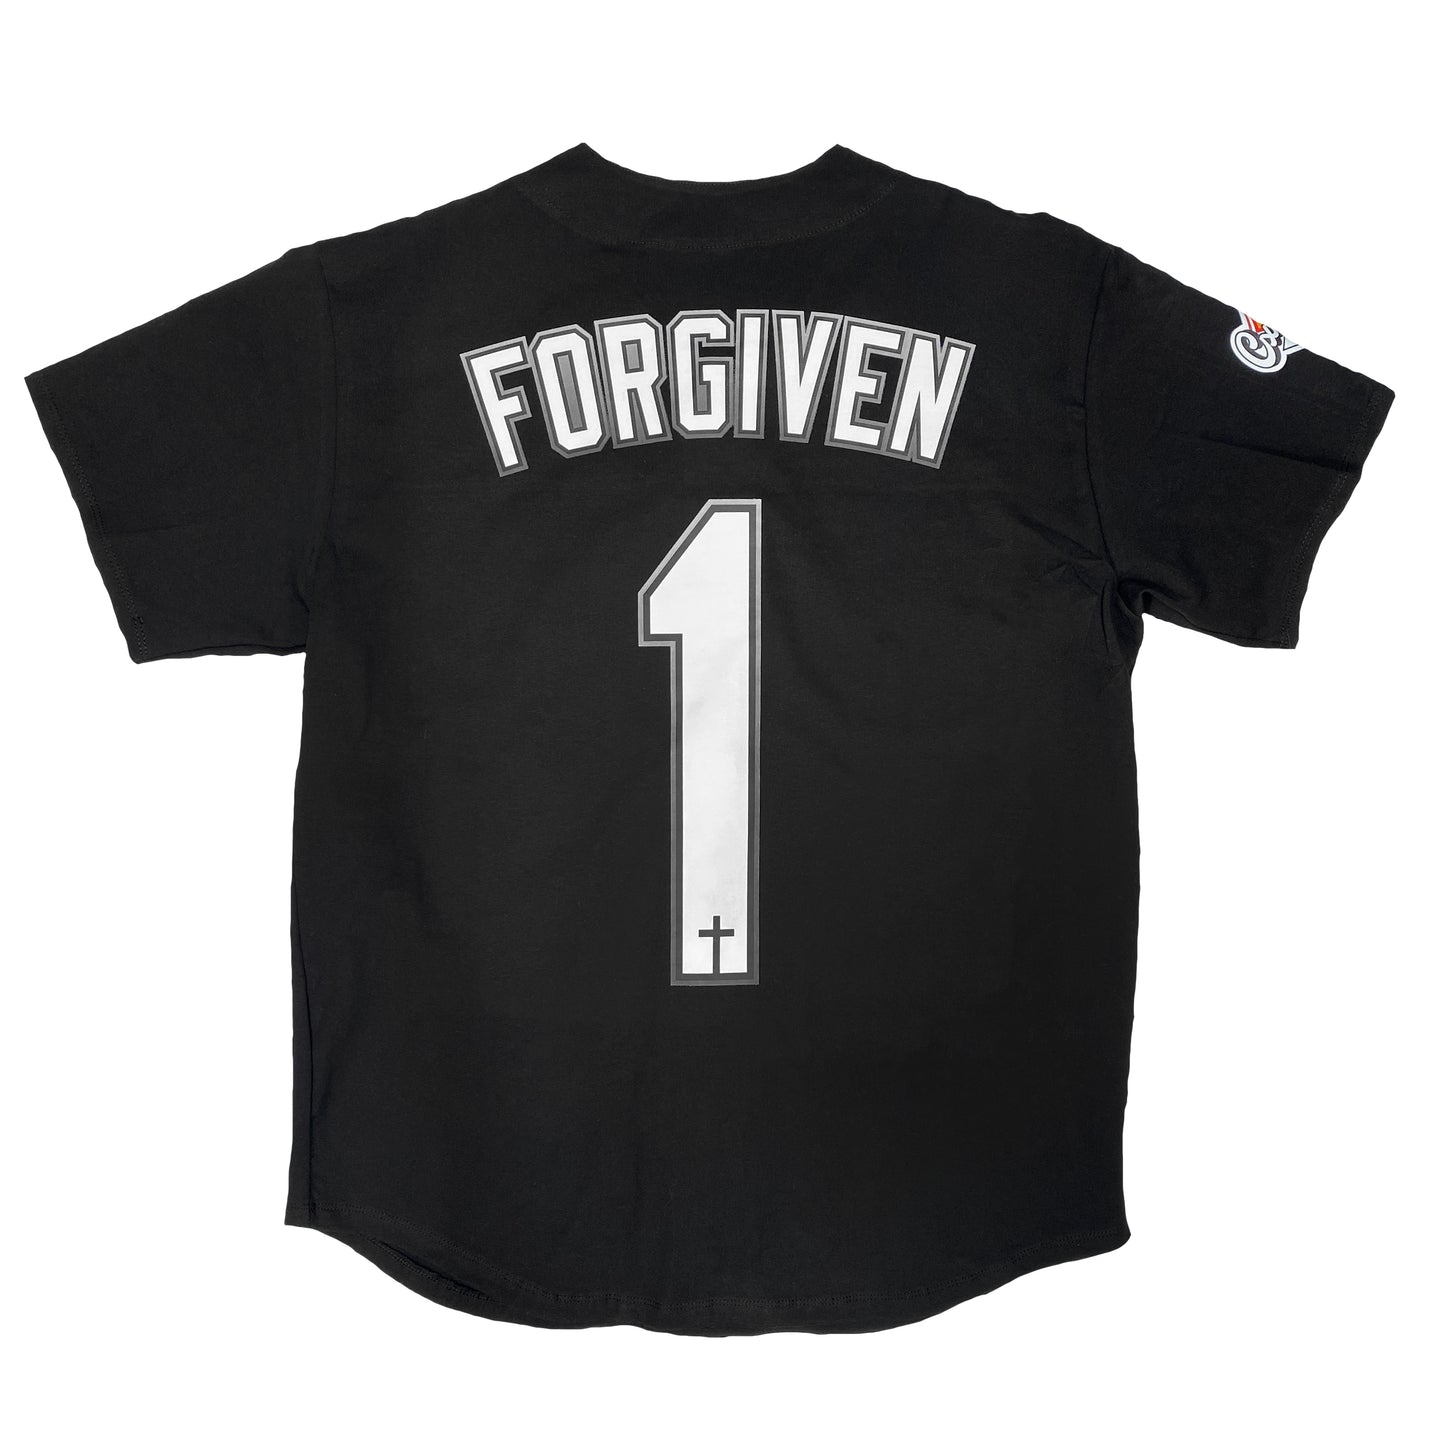 Sinner / Forgiven "Southside" Baseball Jersey